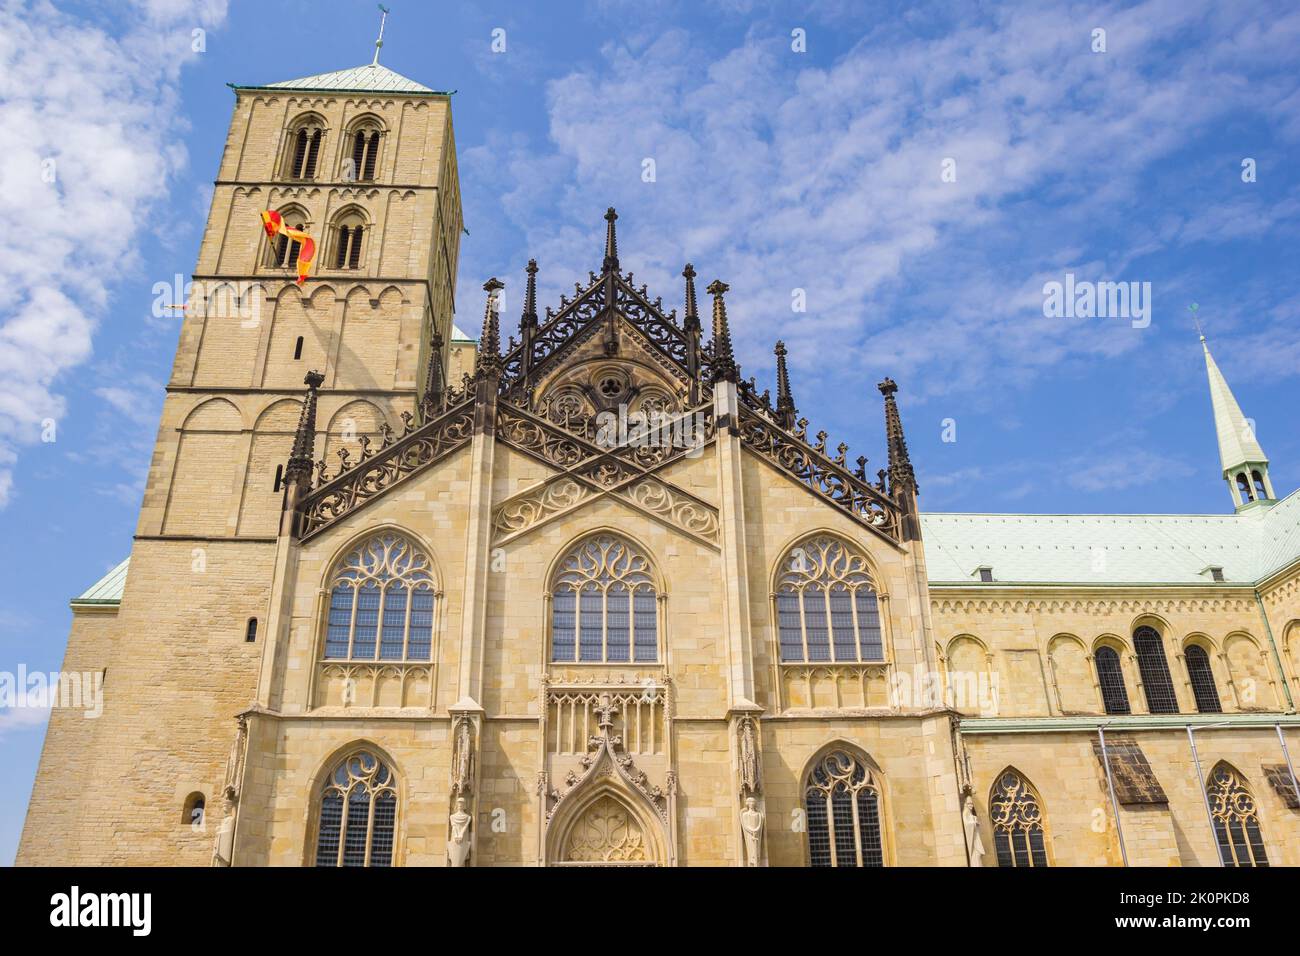 Devant l'église historique Dom de Munster, Allemagne Banque D'Images